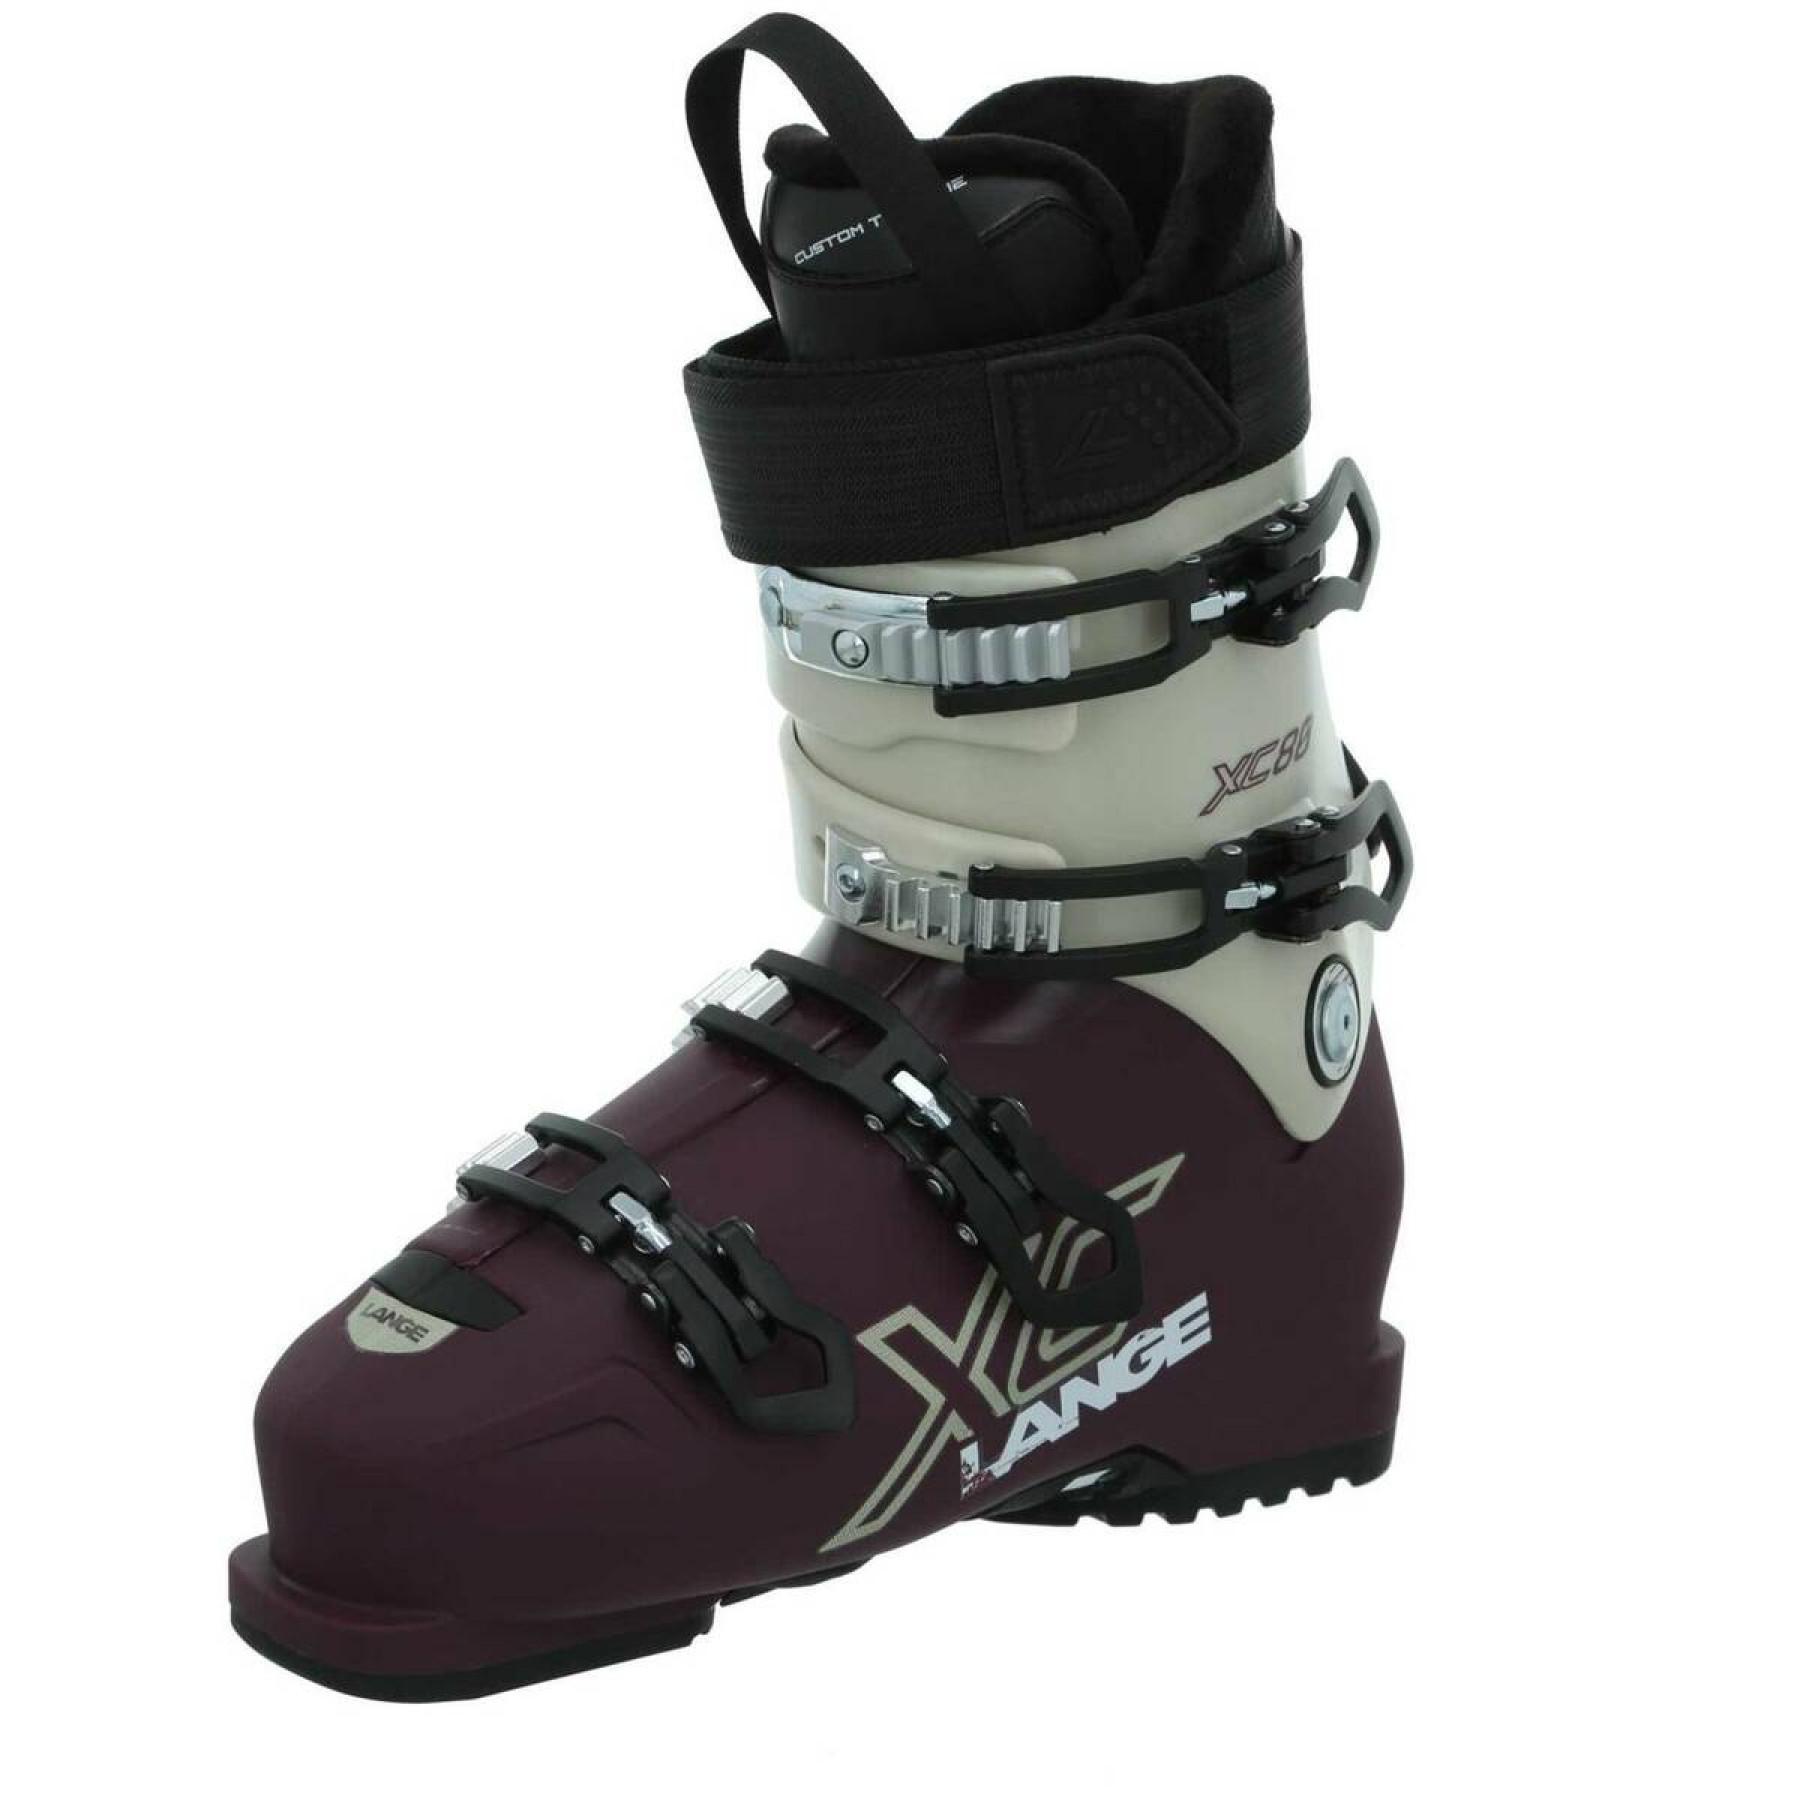 Zapatillas de esquí mujer Lange xc 80